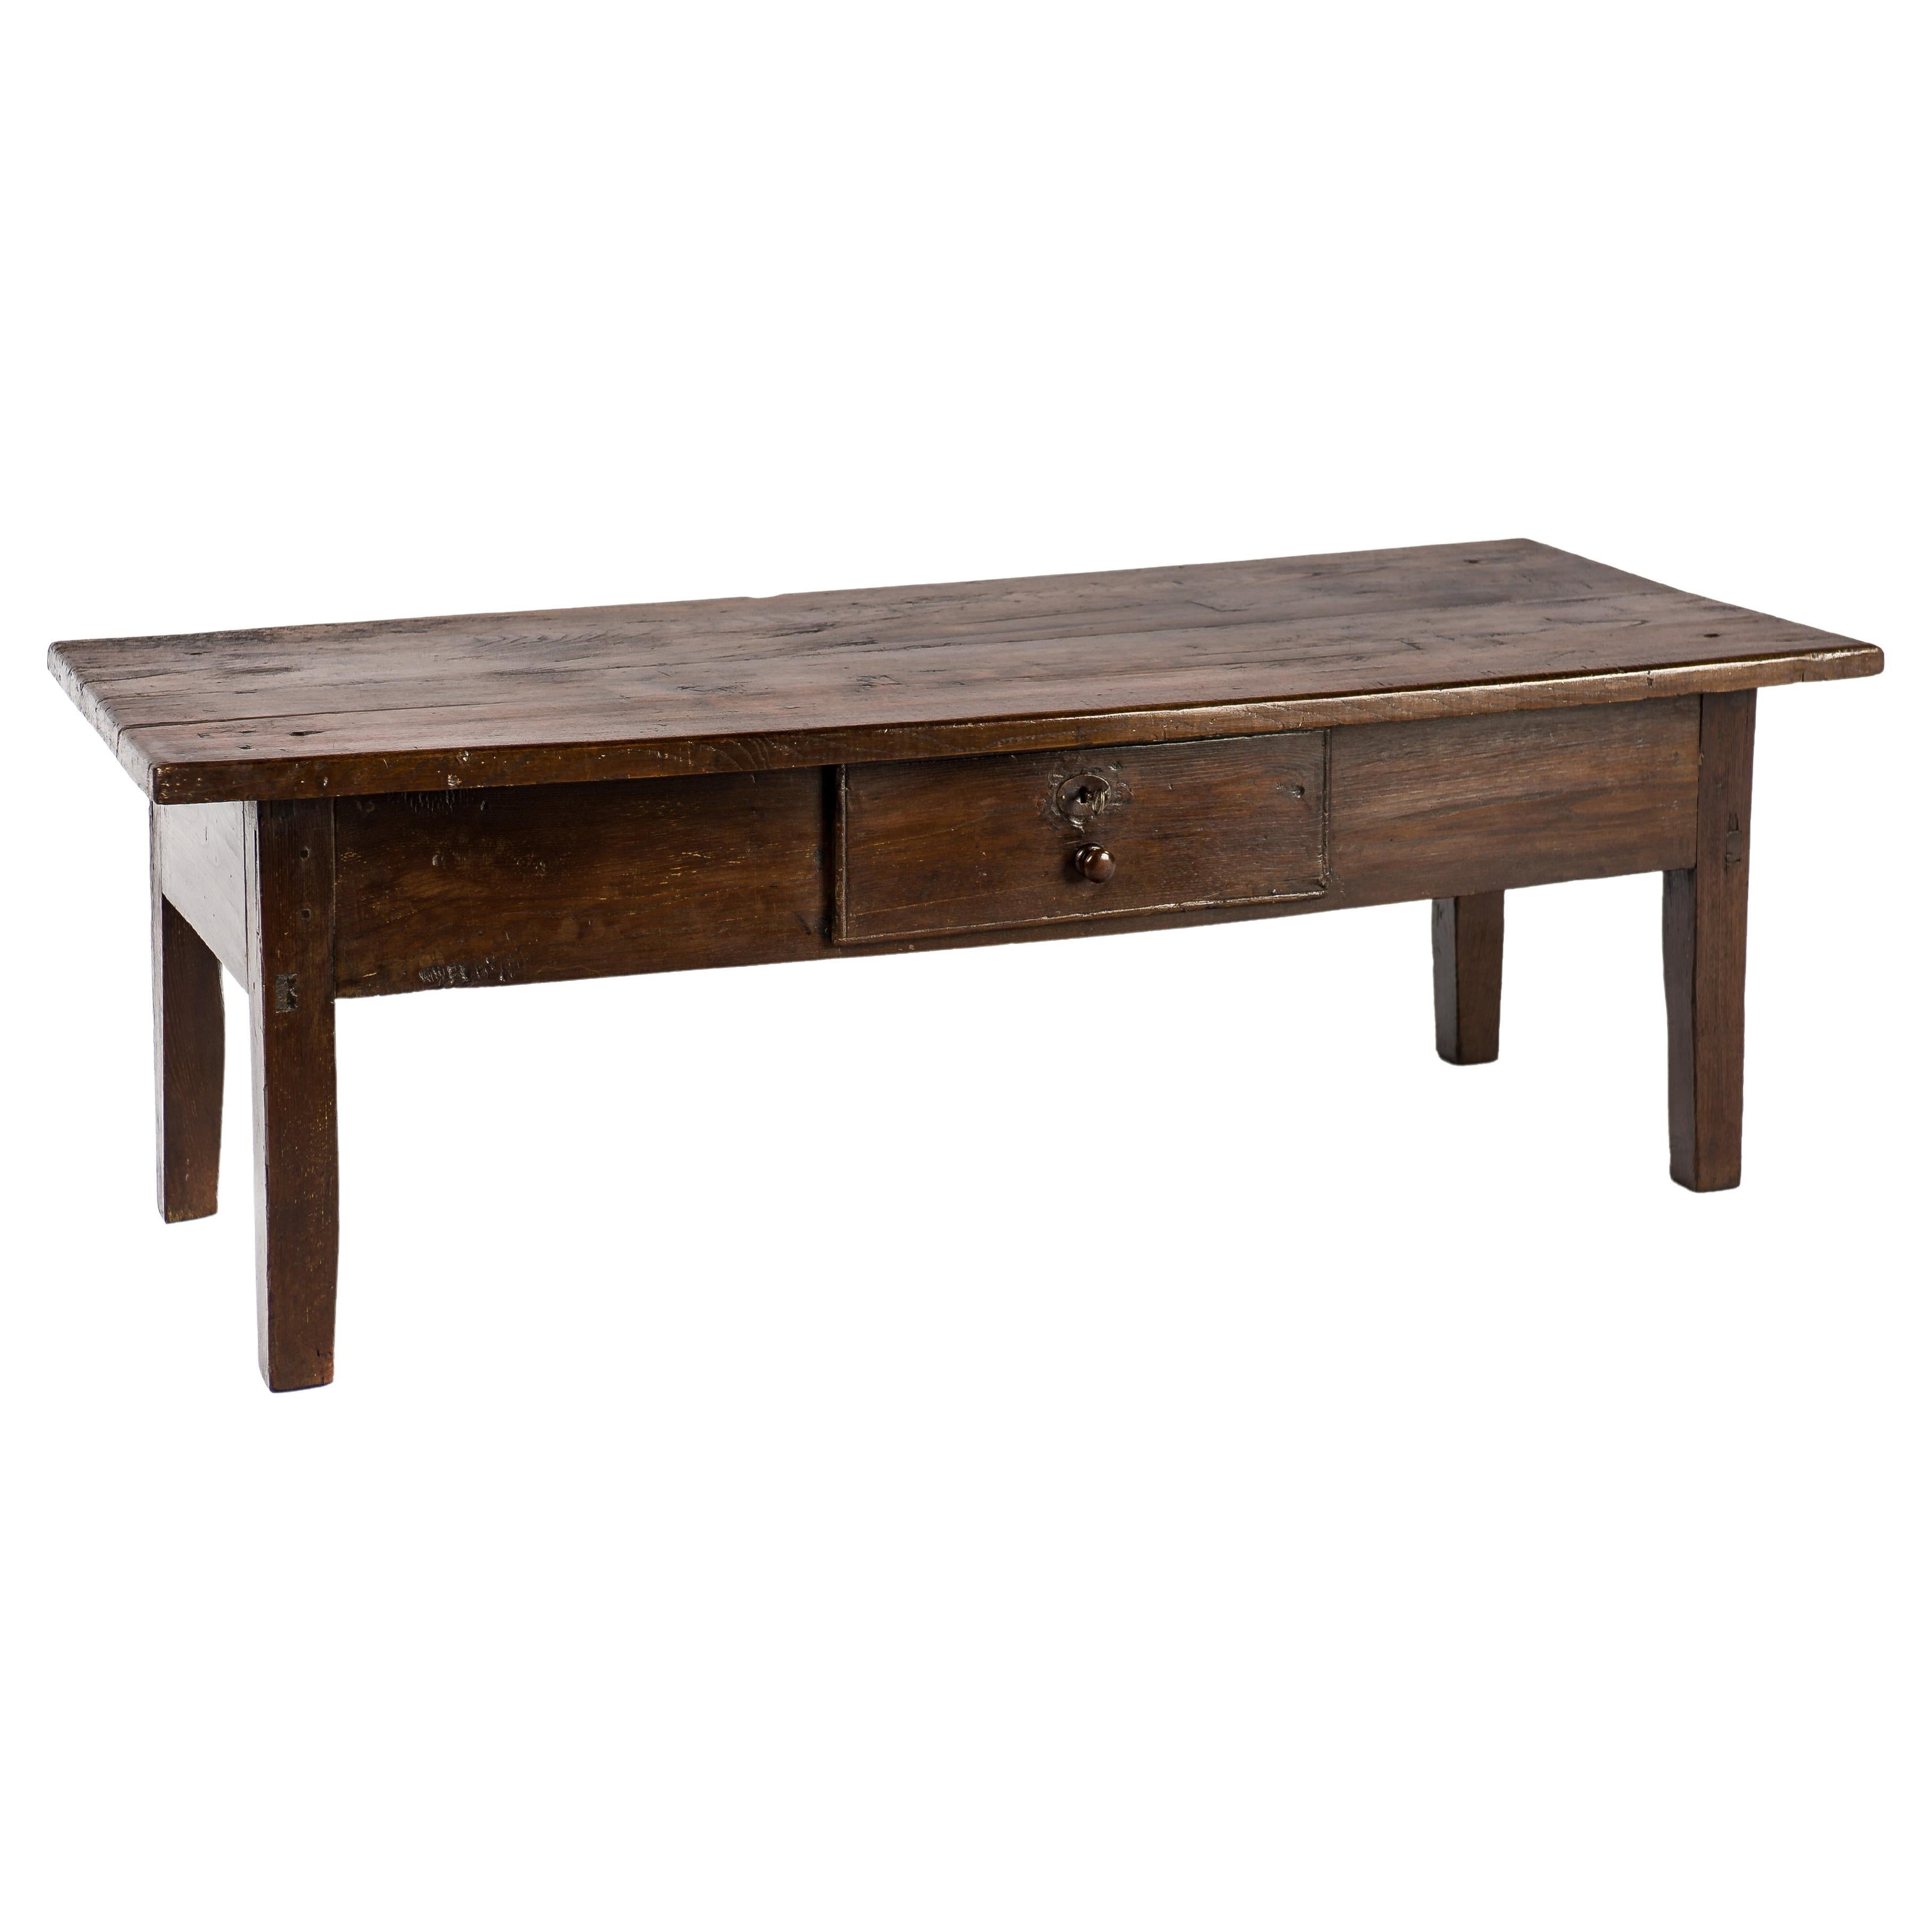 Ancienne table basse rustique espagnole du début du XIXe siècle en châtaignier brun chaud